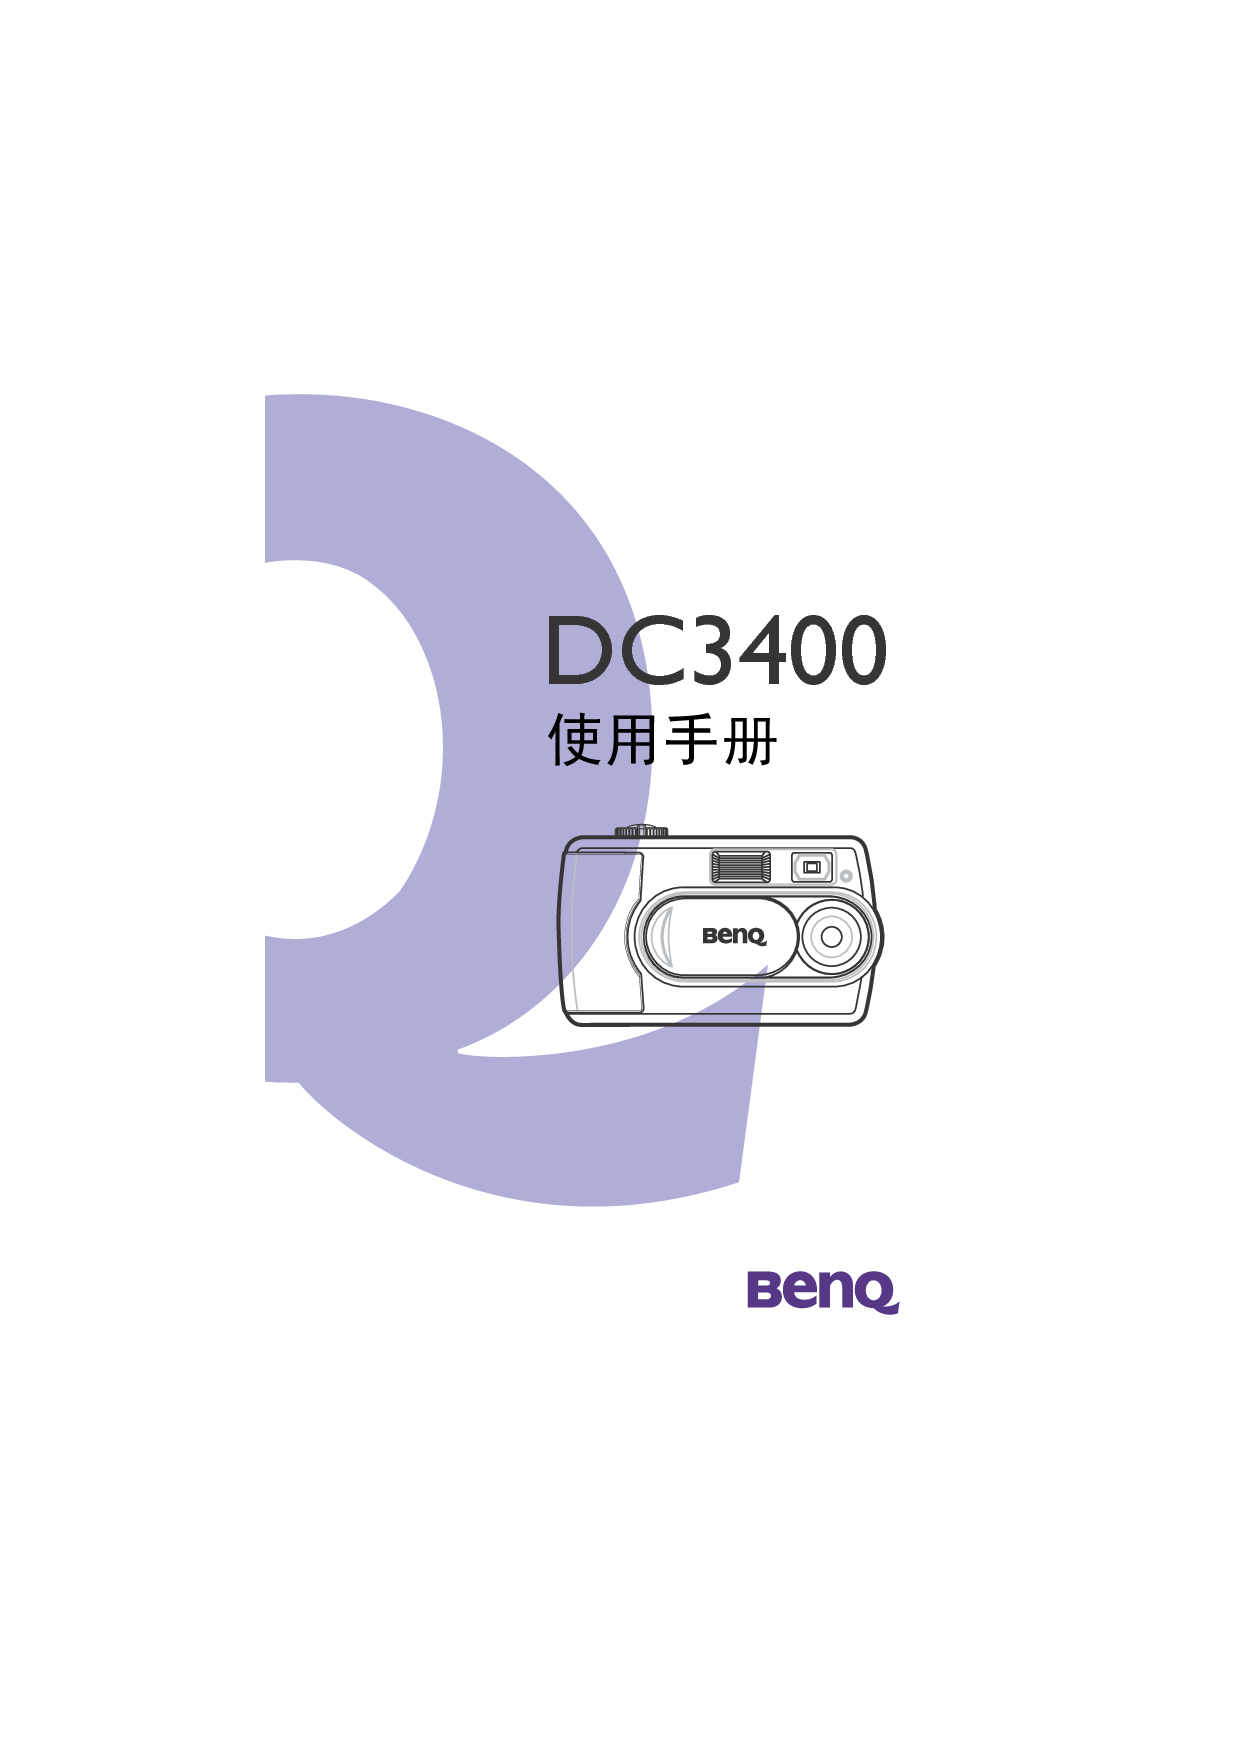 明基 Benq DC3400 使用手册 封面